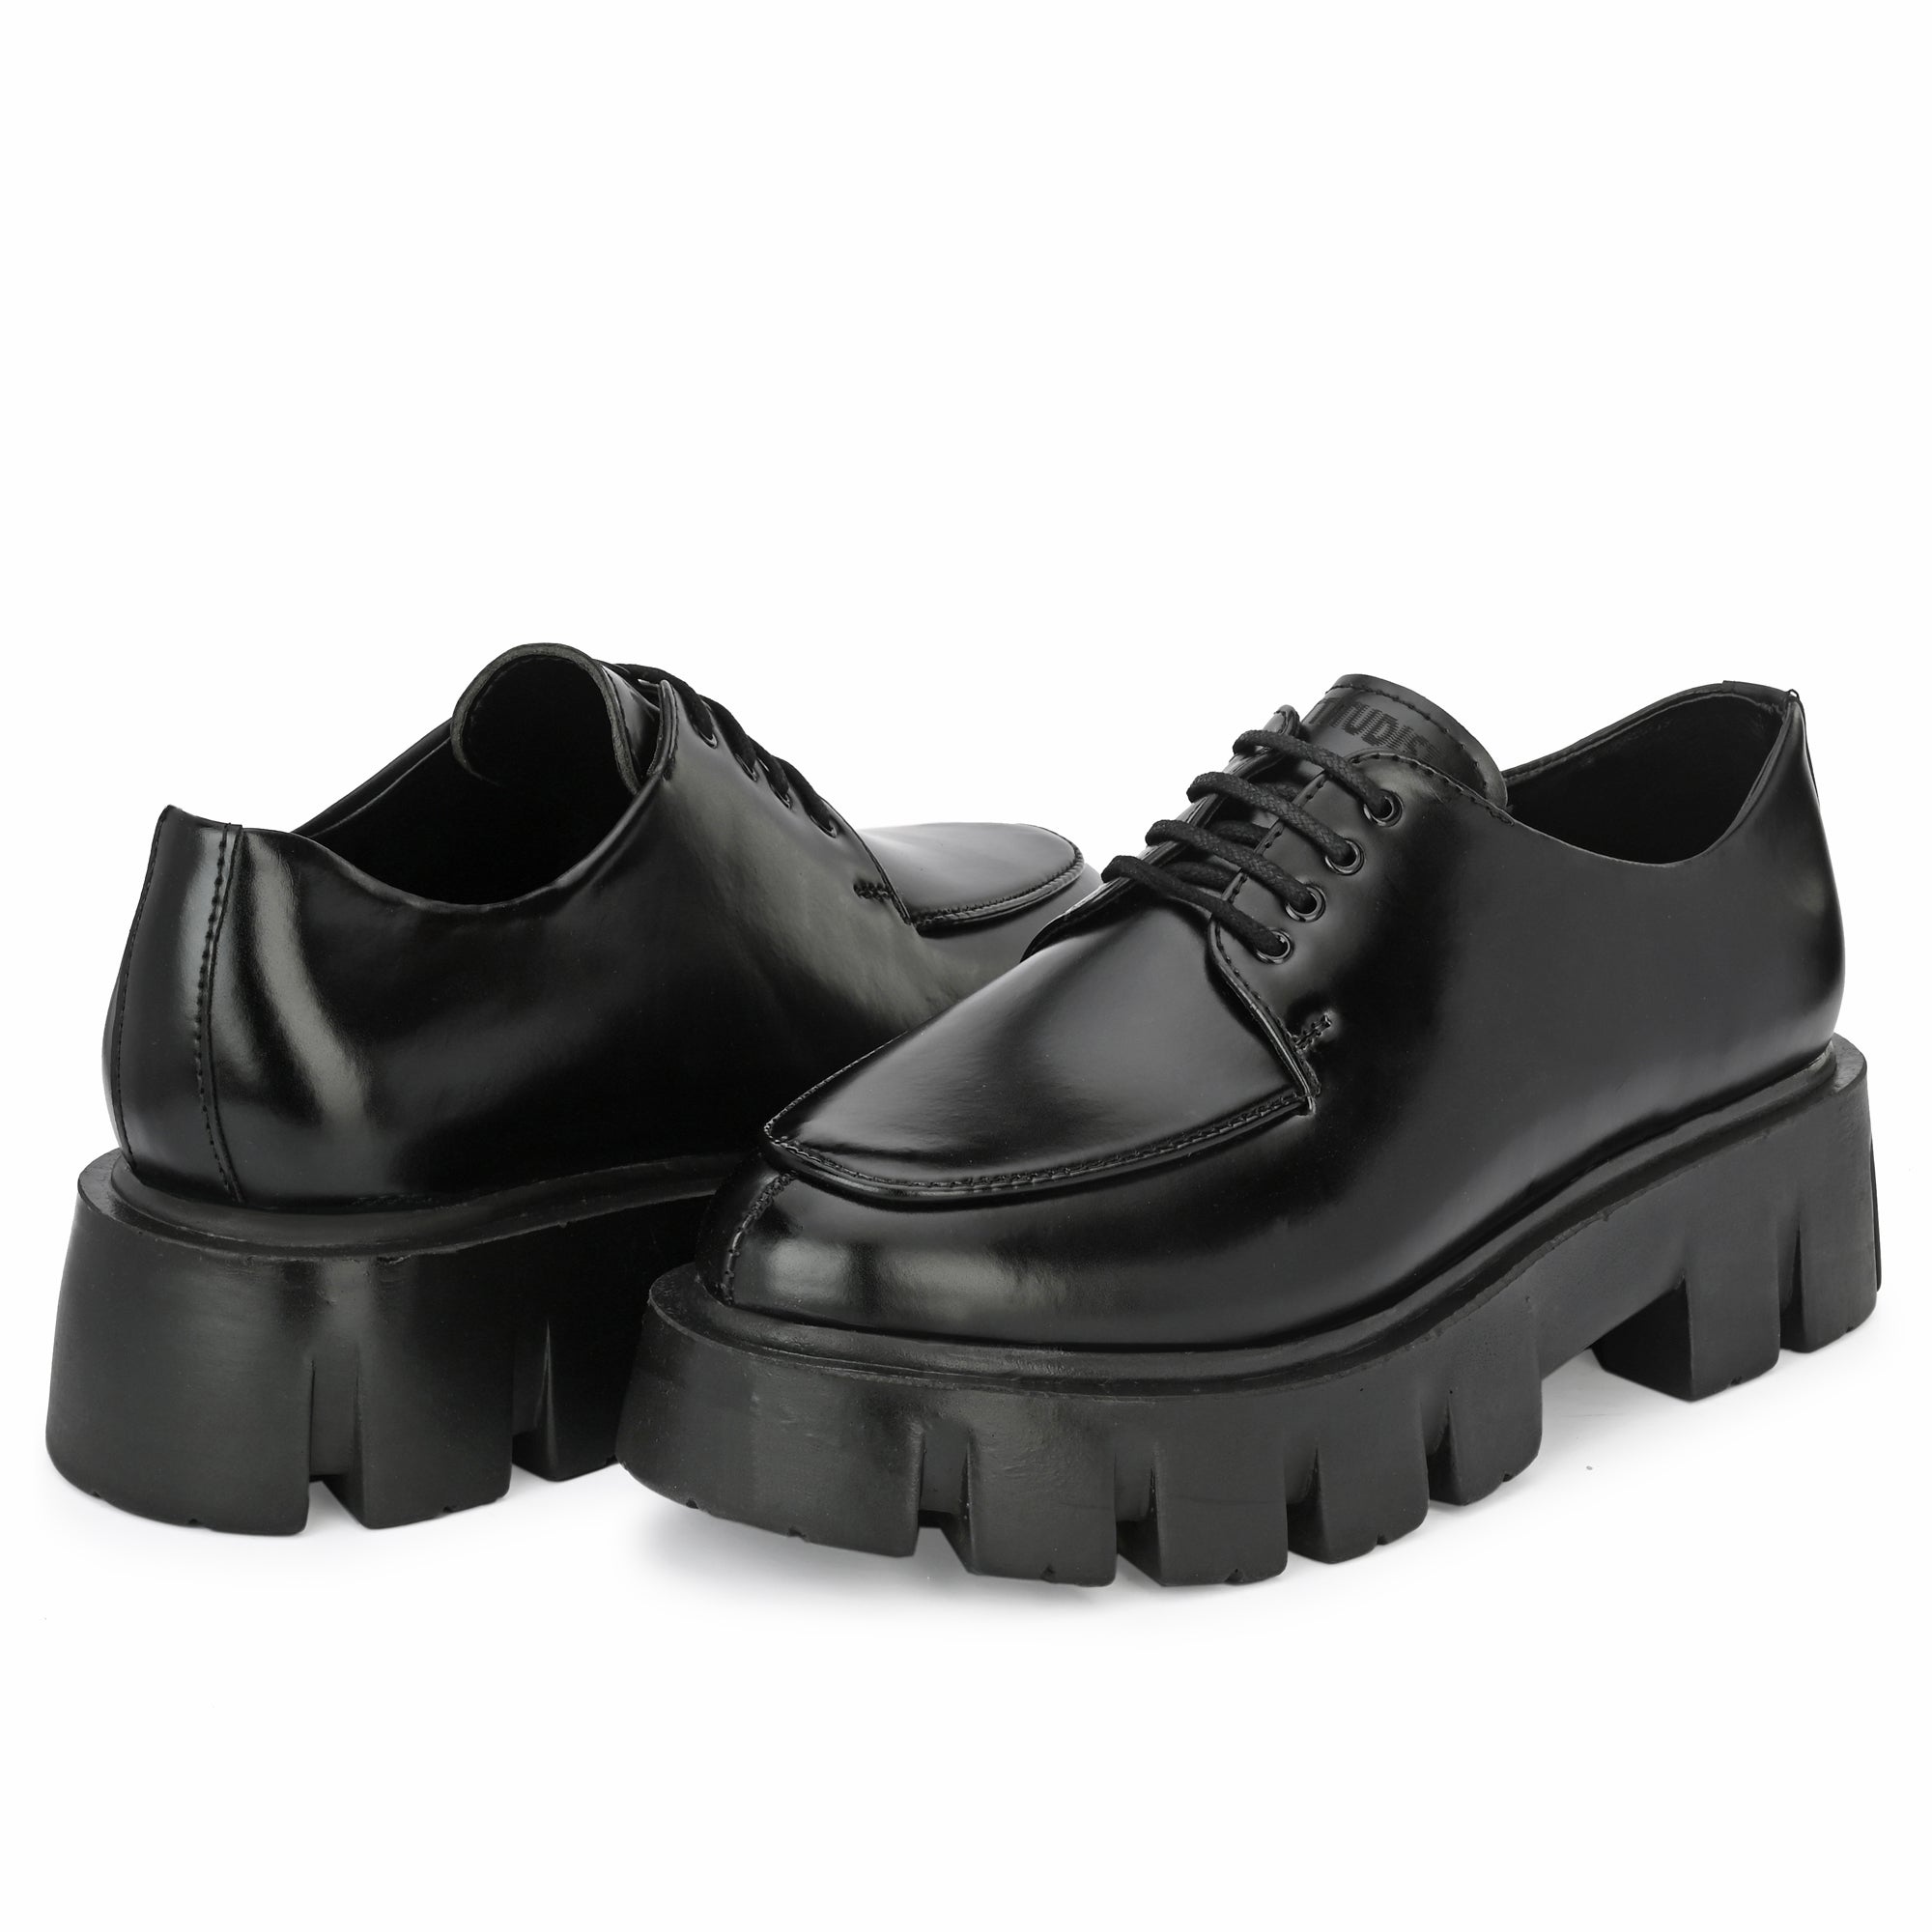 attitudist-matte-black-high-heel-formal-derby-shoes-for-men